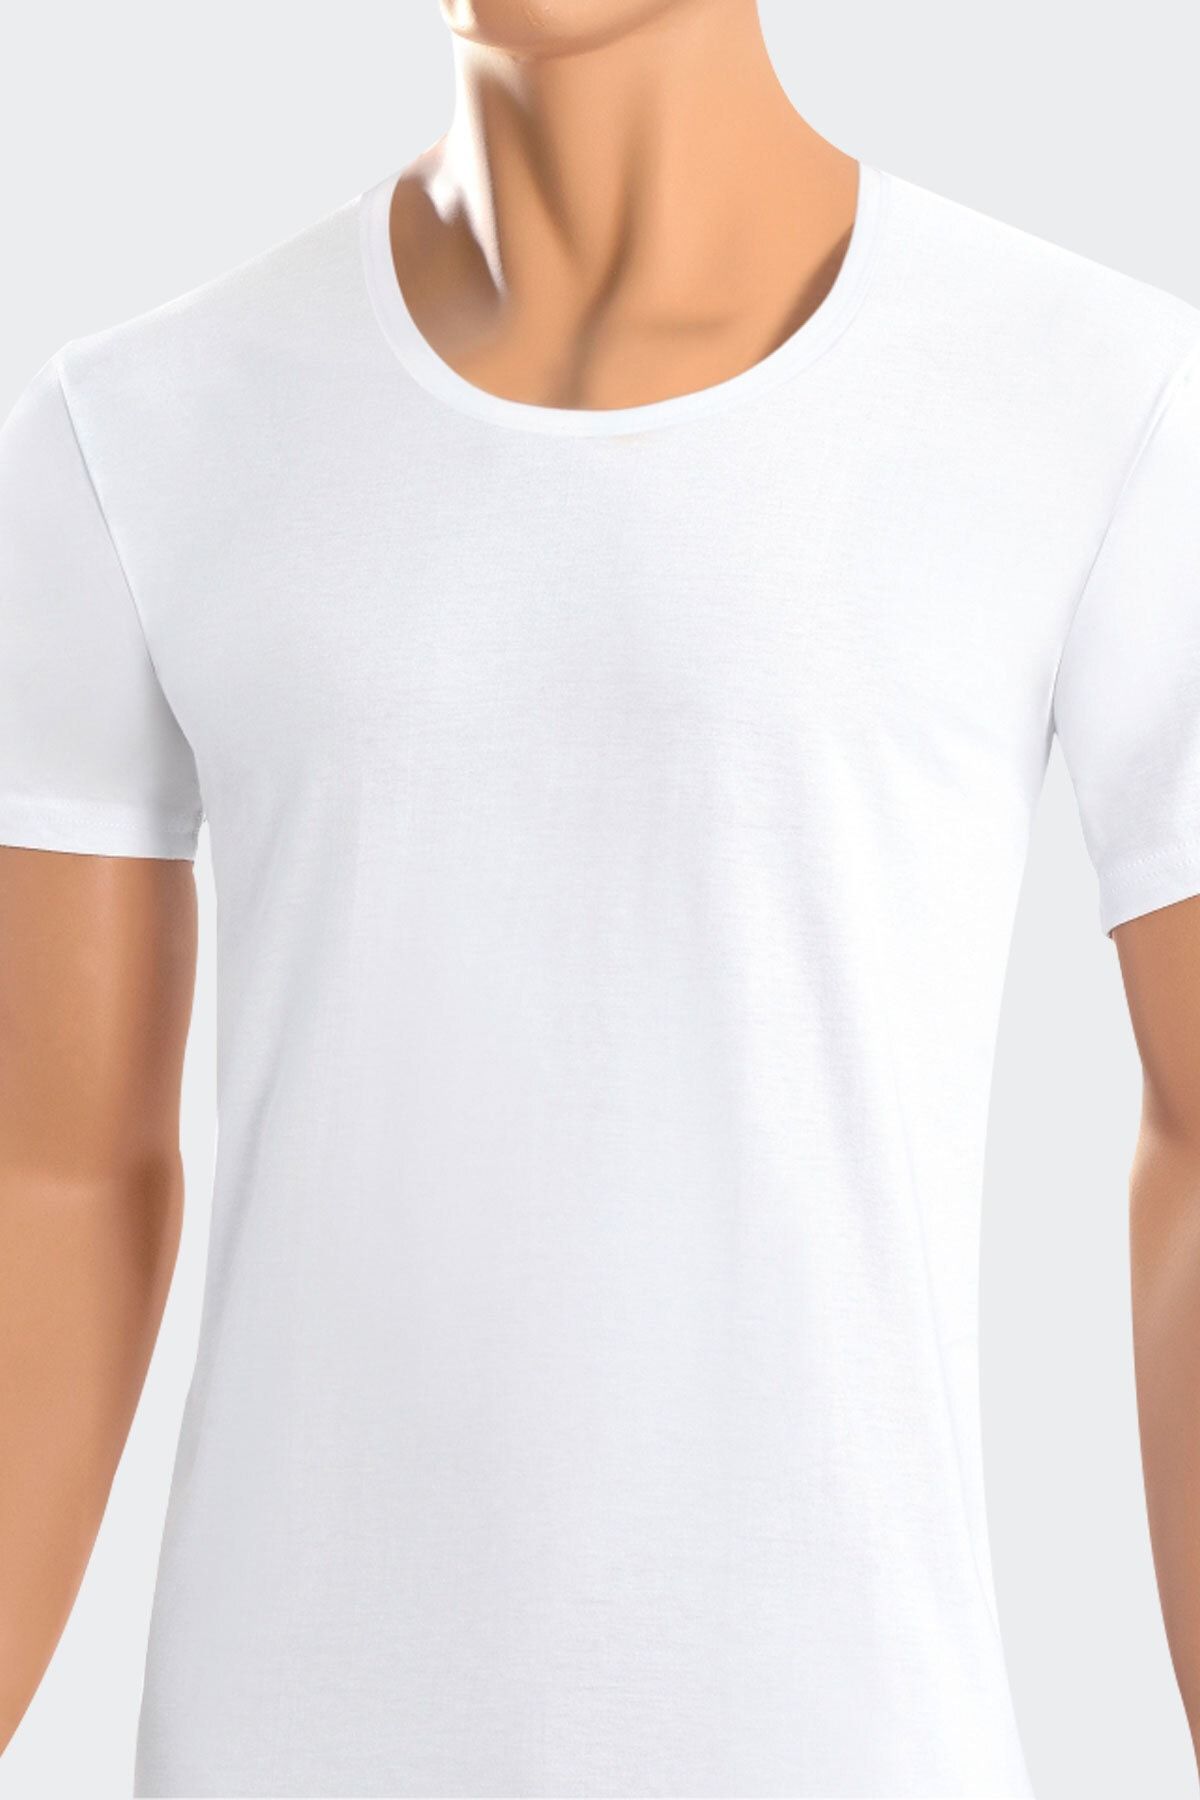 Öts 6'lı Erkek Süprem Açık Yaka T-shirt Beyaz (%100 Pamuk)